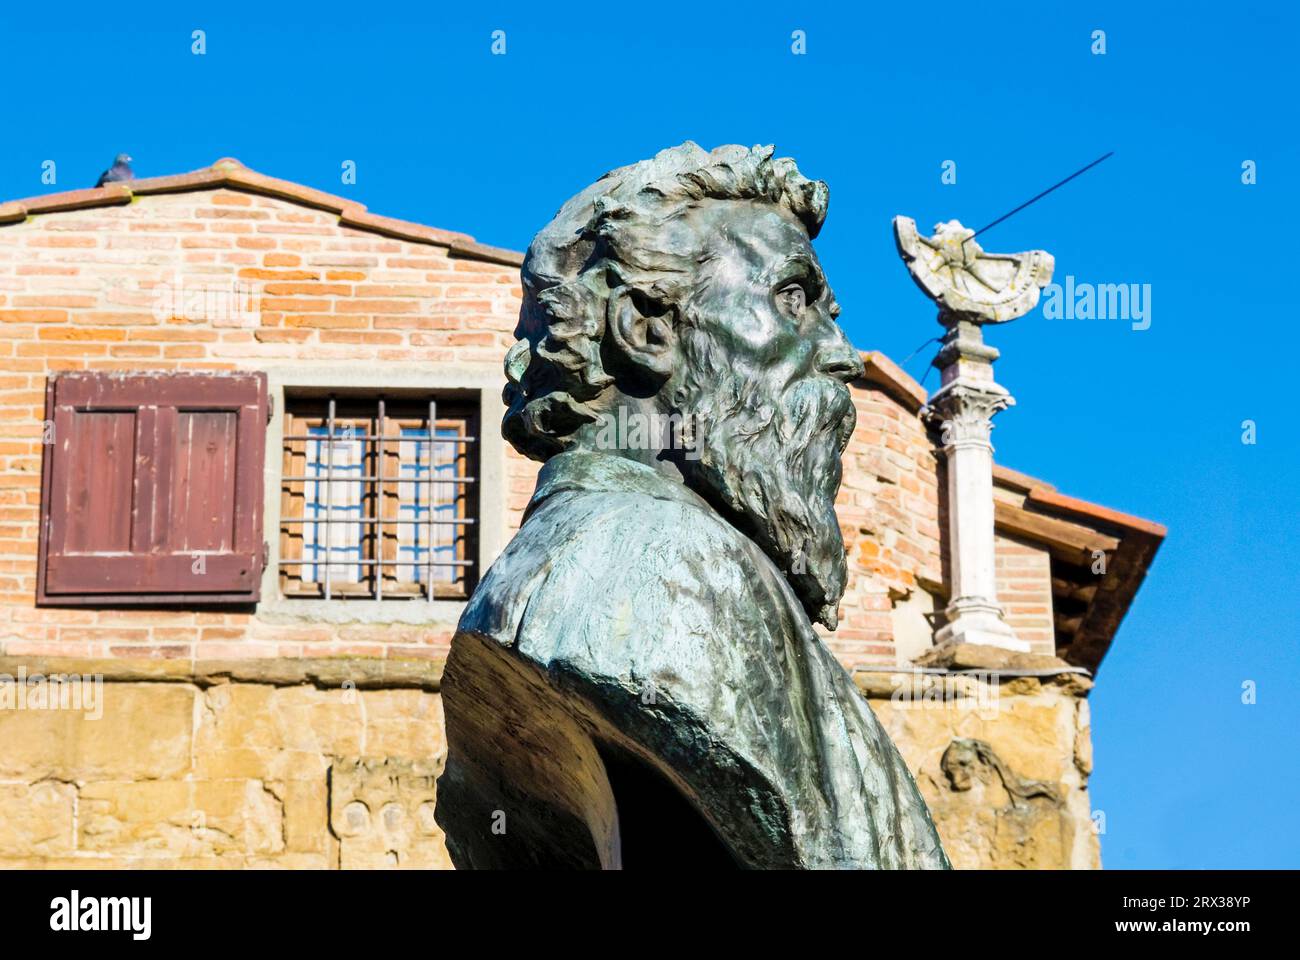 Statue de Benvenuto Cellini et cadran solaire, Ponte Vecchio, Florence (Florence), site du patrimoine mondial de l'UNESCO, Toscane, Italie, Europe Banque D'Images